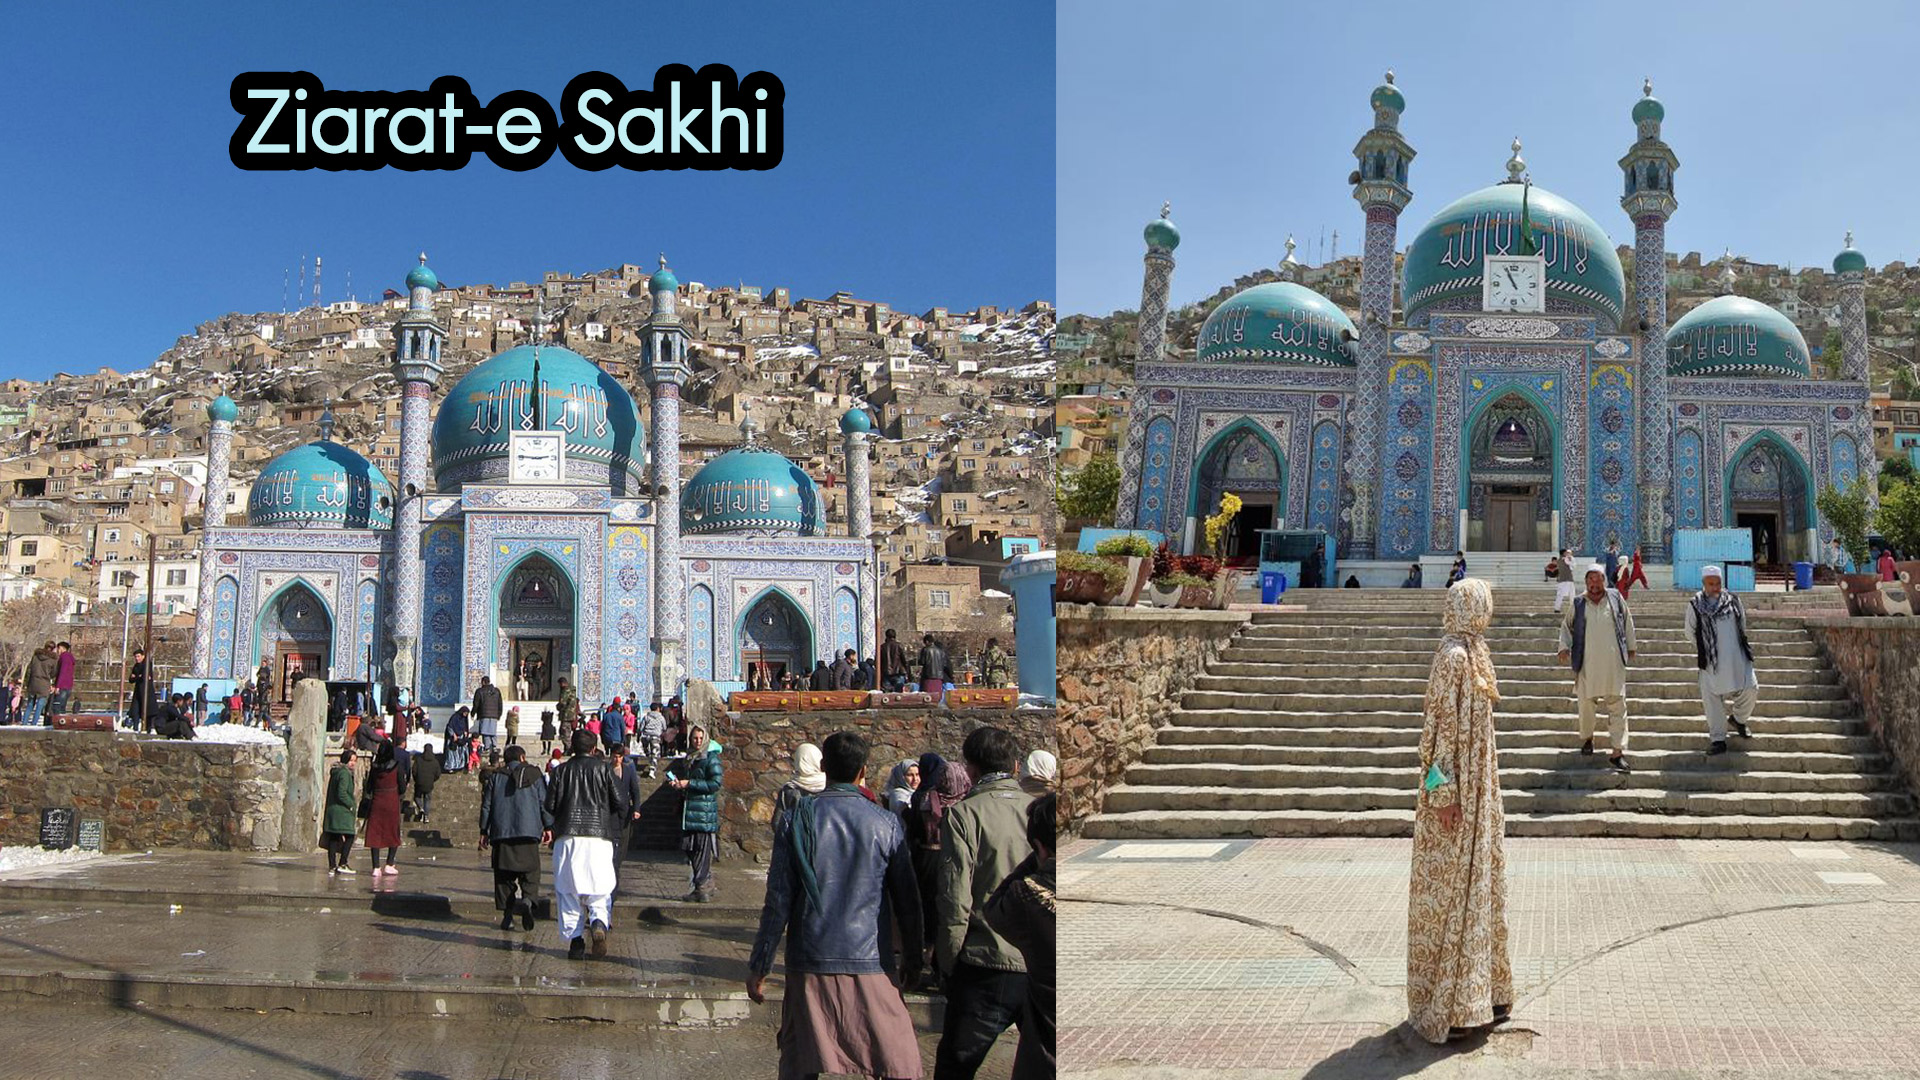 Ziarat-e Sakhi เซียราต เอ ซากี โบสถ์สีฟ้าแห่งนี้ตั้งอยู่ใจกลางของกรุงคาบูล